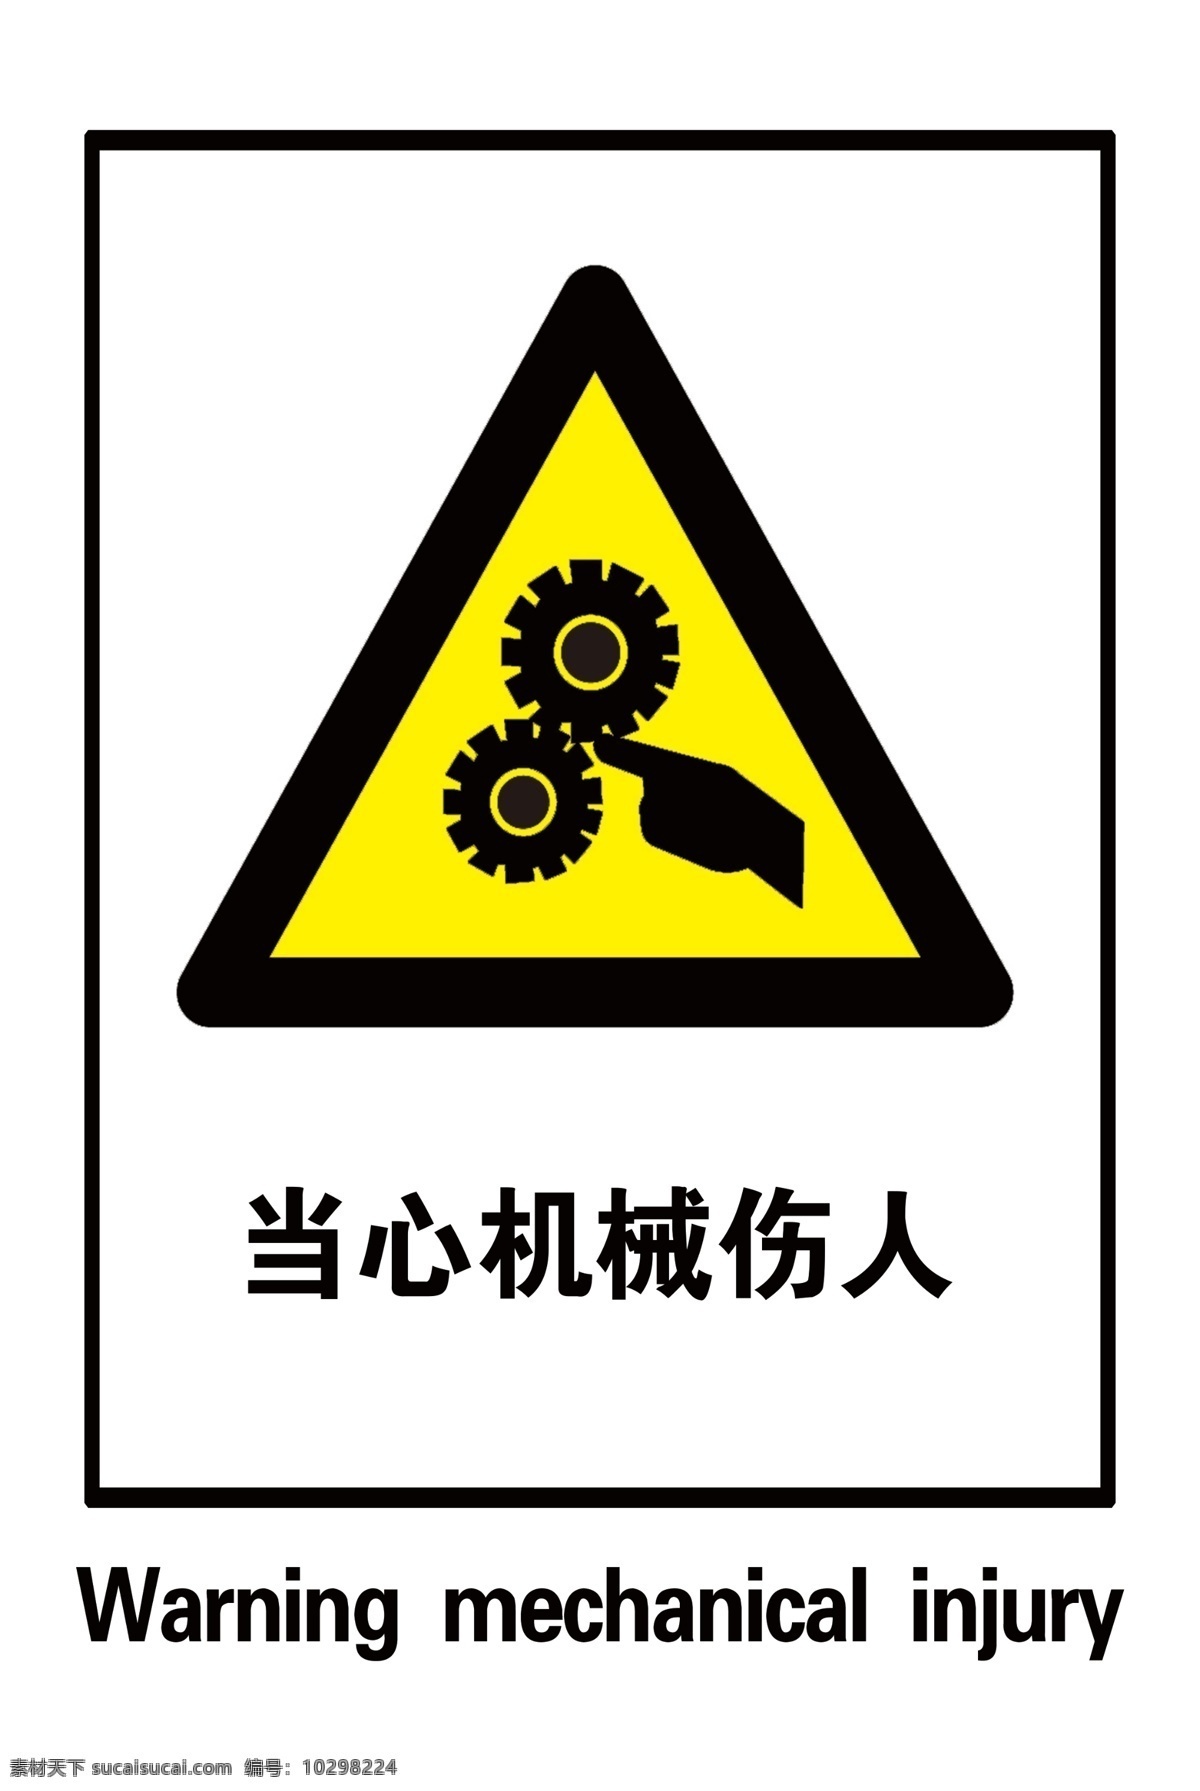 当心机械伤人 当心 机械 伤人 安全 警示 标牌 安全警示标牌